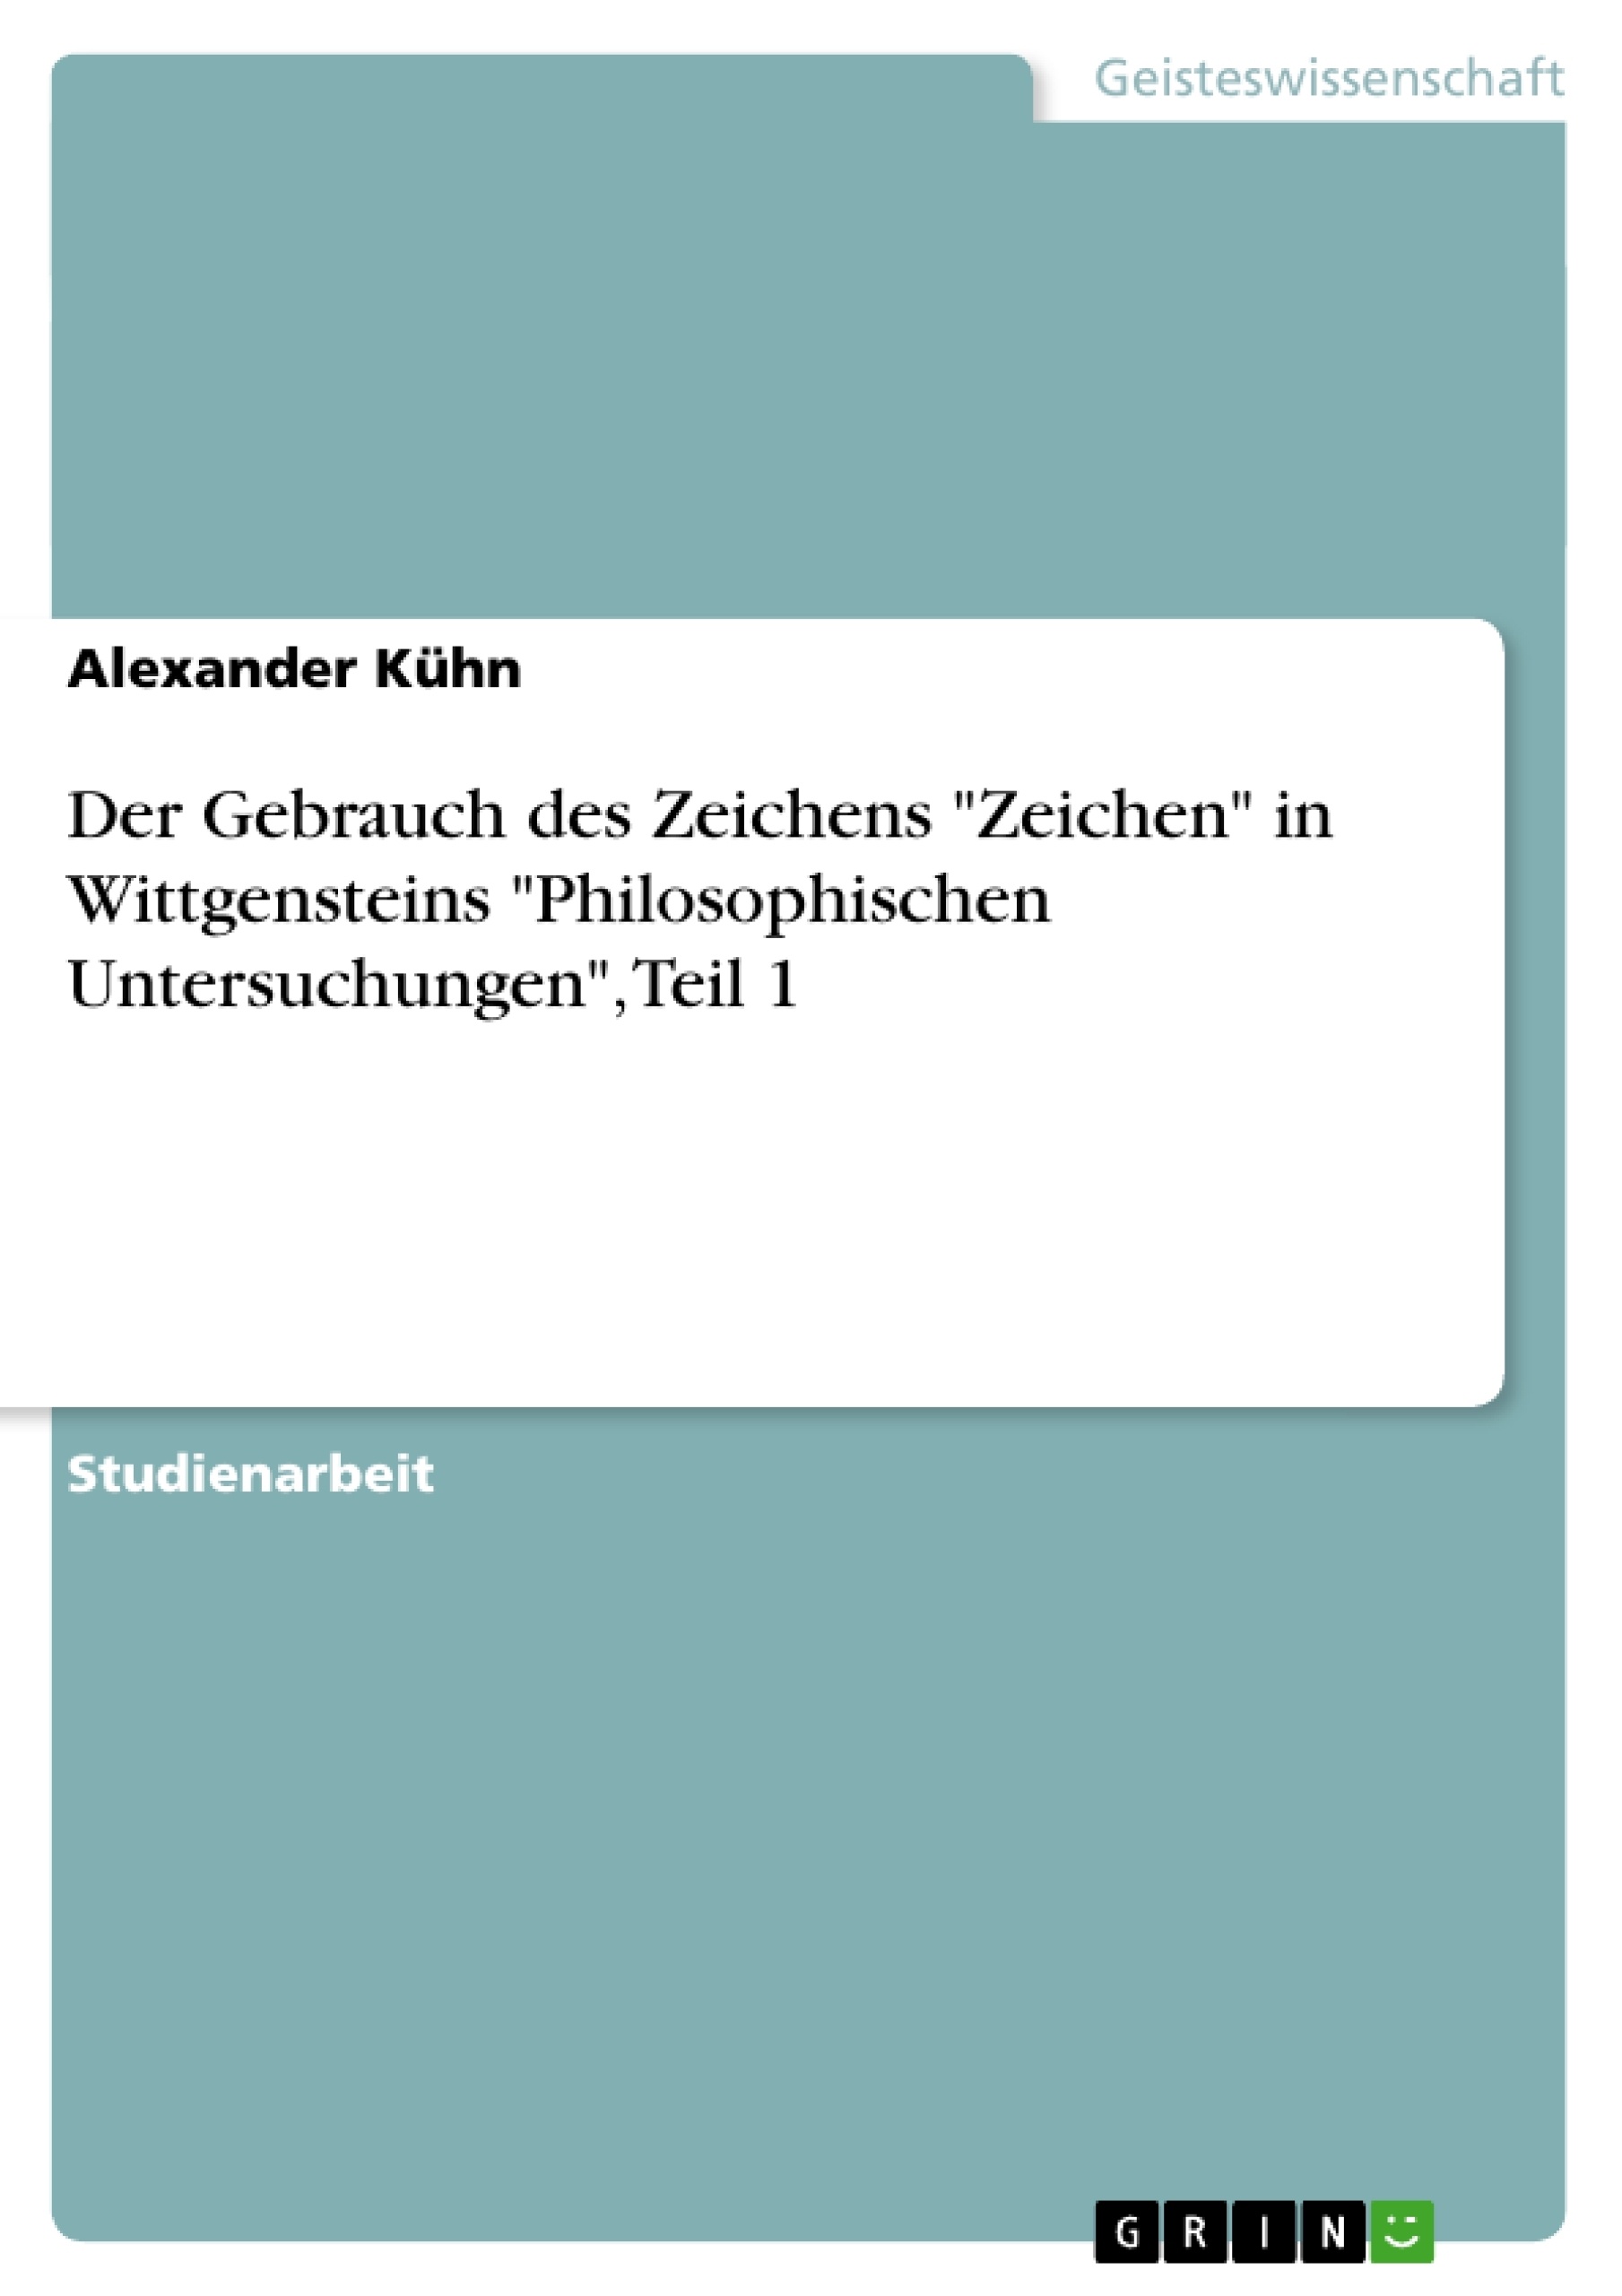 Titre: Der Gebrauch des Zeichens "Zeichen" in Wittgensteins "Philosophischen Untersuchungen", Teil 1